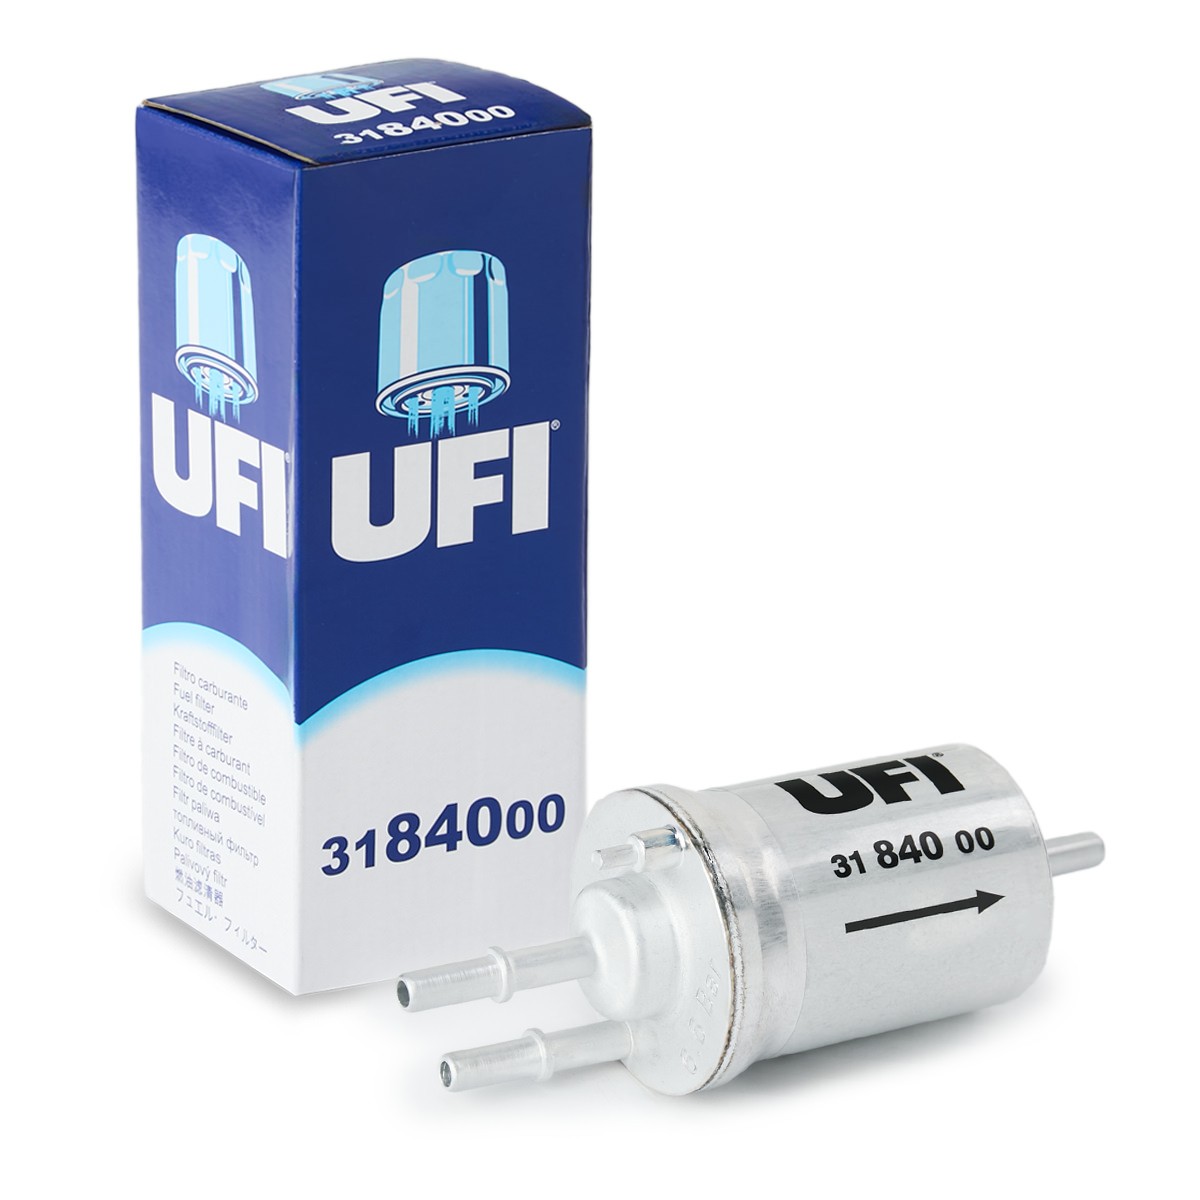 UFI 31.840.00 Fuel filters Filter Insert, 8mm, 8mm